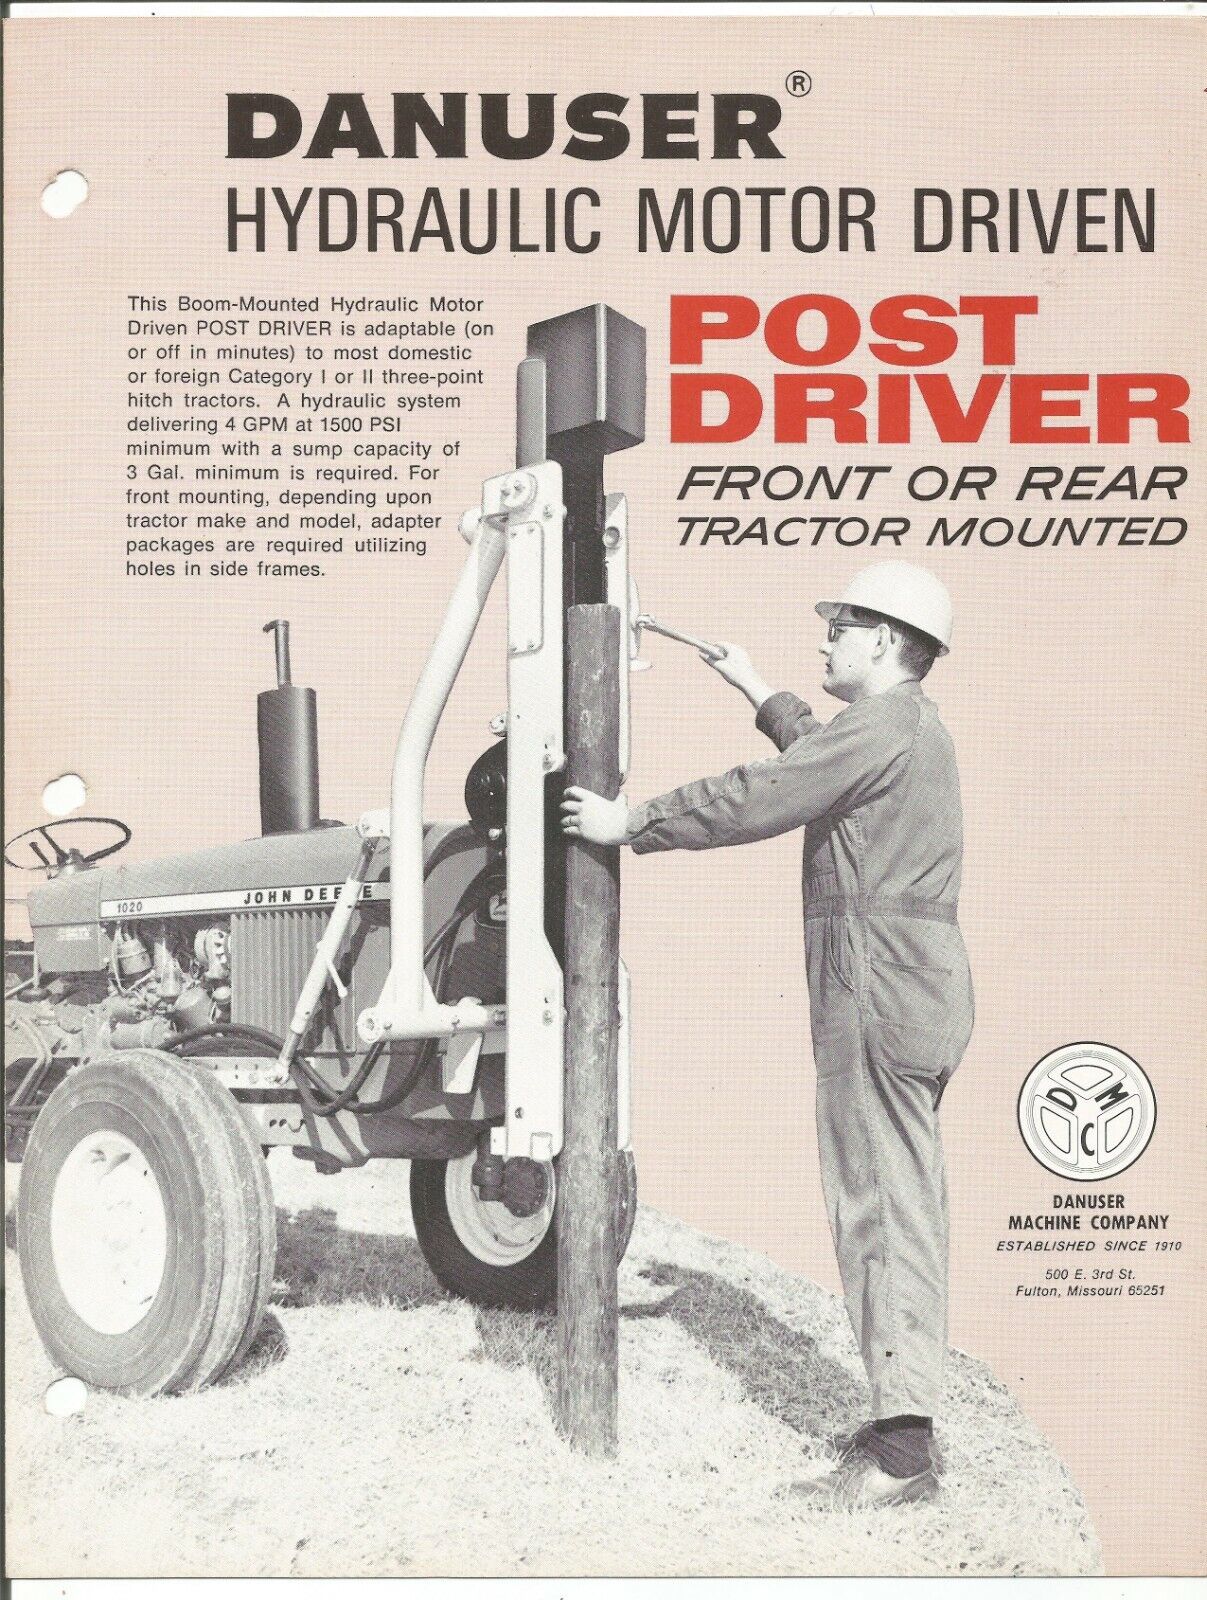 Original OE OEM Danuser Hydraulic Motor Driven Post Driver Sales Brochure # 2505